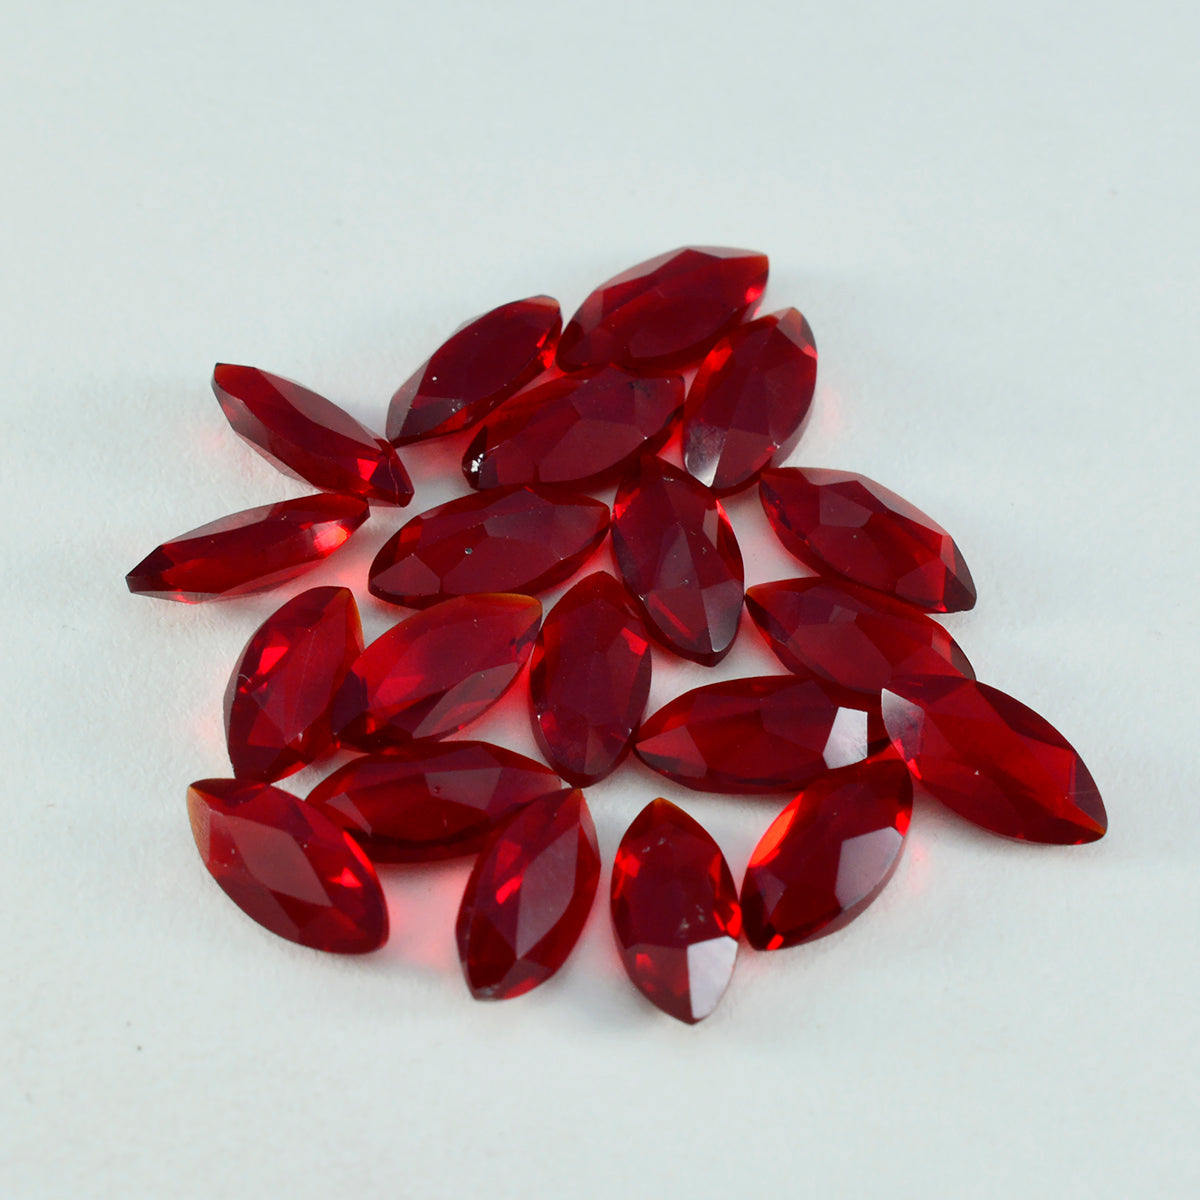 Riyogems 1PC Red Ruby CZ gefacetteerd 7x14 mm Marquise vorm aantrekkelijke kwaliteitssteen